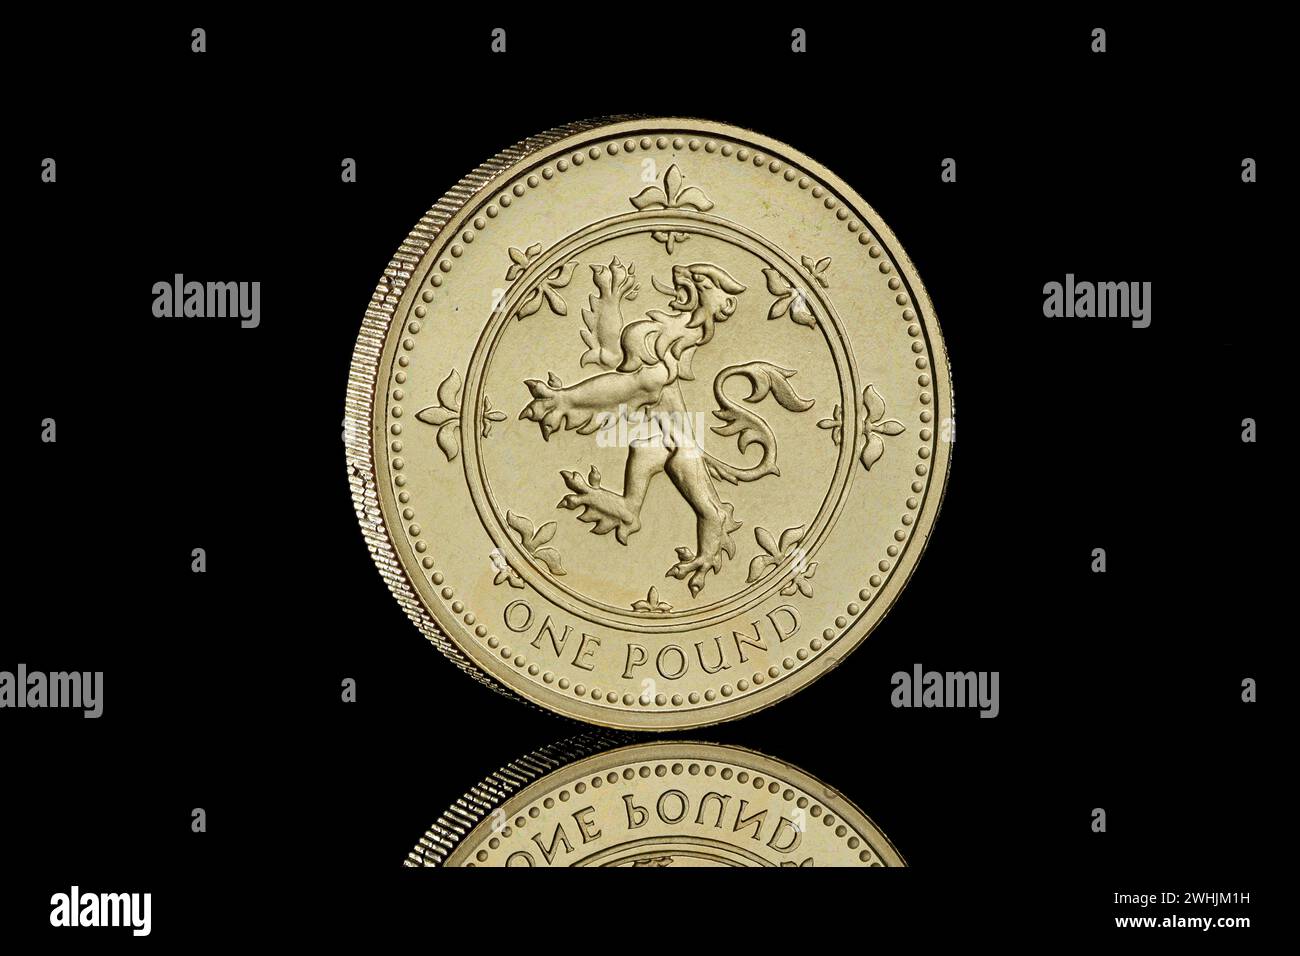 1994 Royaume-Uni pièce de 1 £ représentant un Lion écossais rampant et la reine Elizabeth II Banque D'Images